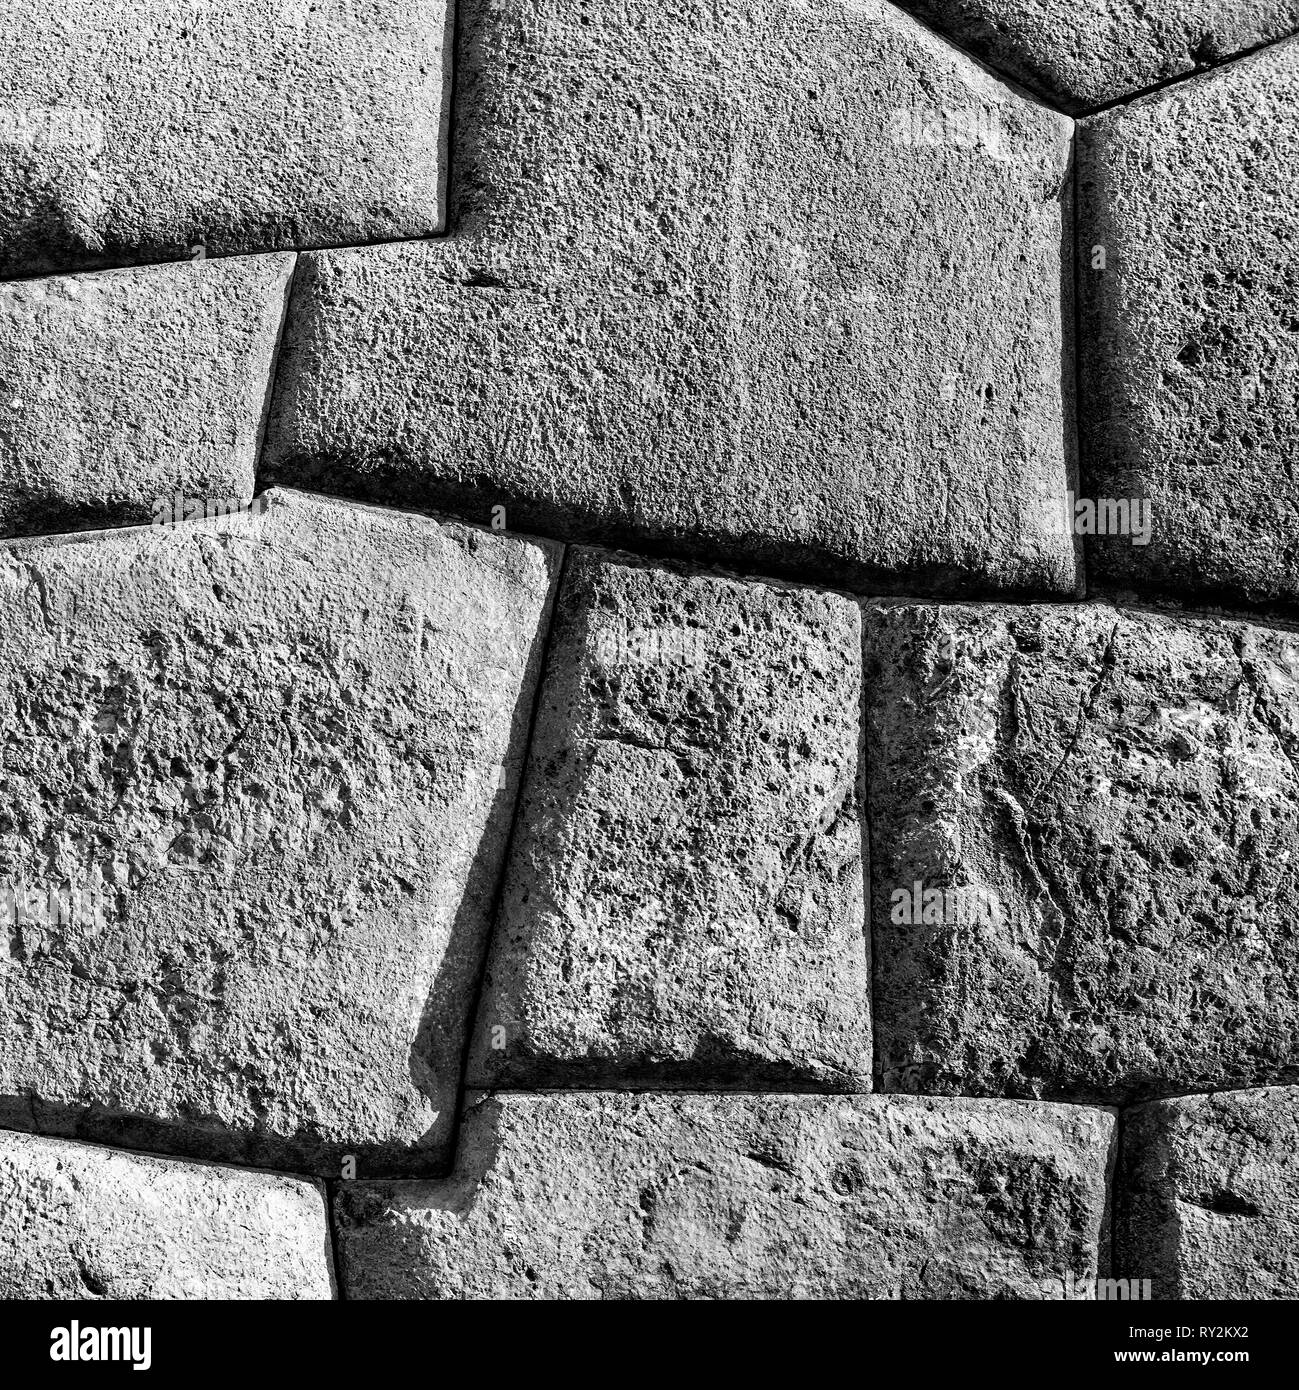 Square photographie en noir et blanc d'un mur Inca dans les ruines archéologiques de Sacsayhuaman à Cusco, Pérou. Banque D'Images